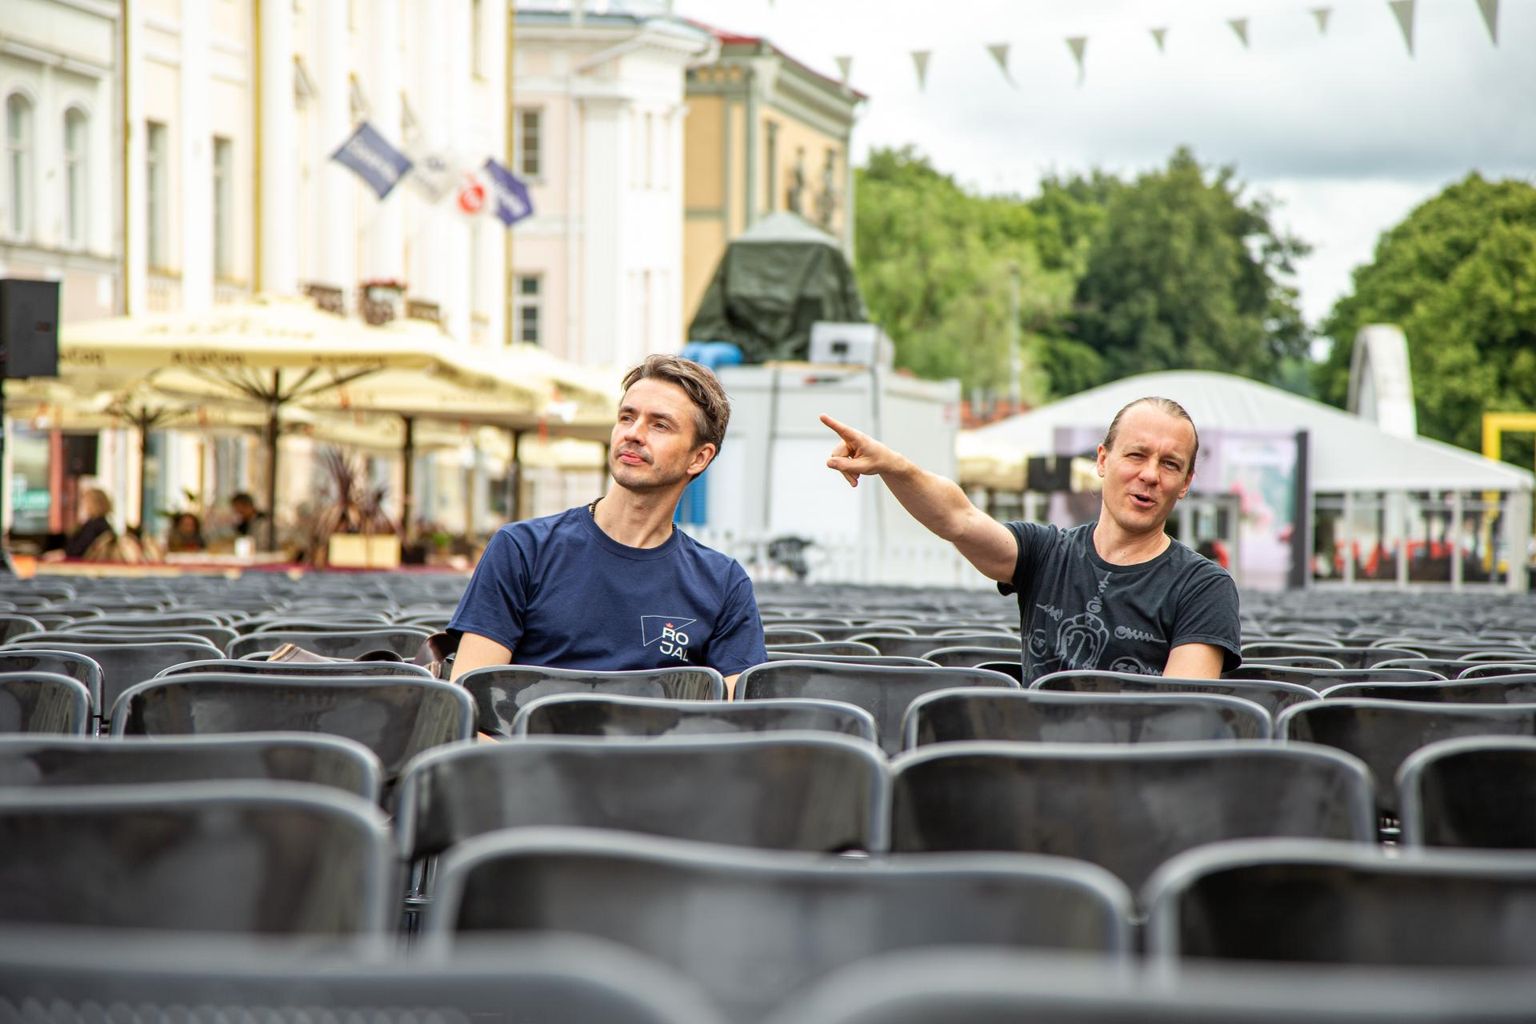 Tänavusel festivalil linastus kaks Läti režissööri Andris Gauja (vasakul) filmi: «Õppetund» ja «Perekonnainstinkt». Teisipäeval peeti koos filmiasjatundja ja Tartuffi ellukutsuja Kaarel Kuurmaaga nende ainetel maha ka mõtteterav vestlusring.